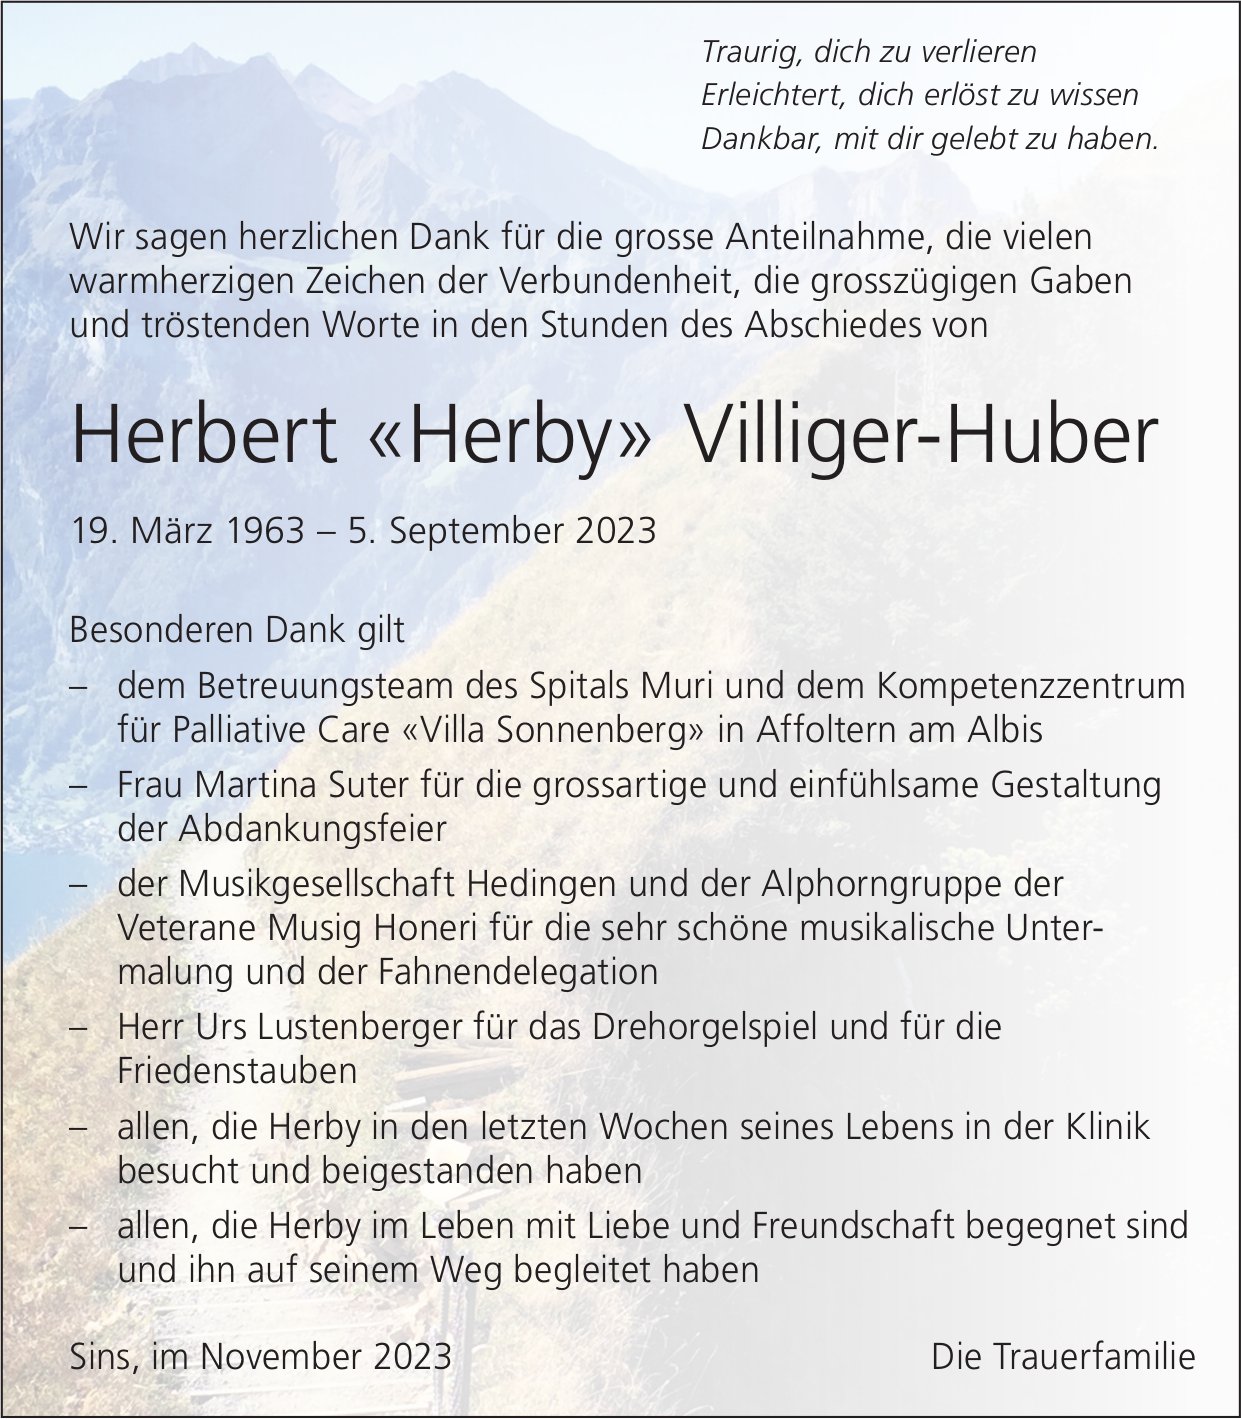 Villiger-Huber Herbert «Herby», im November 2023 / DS